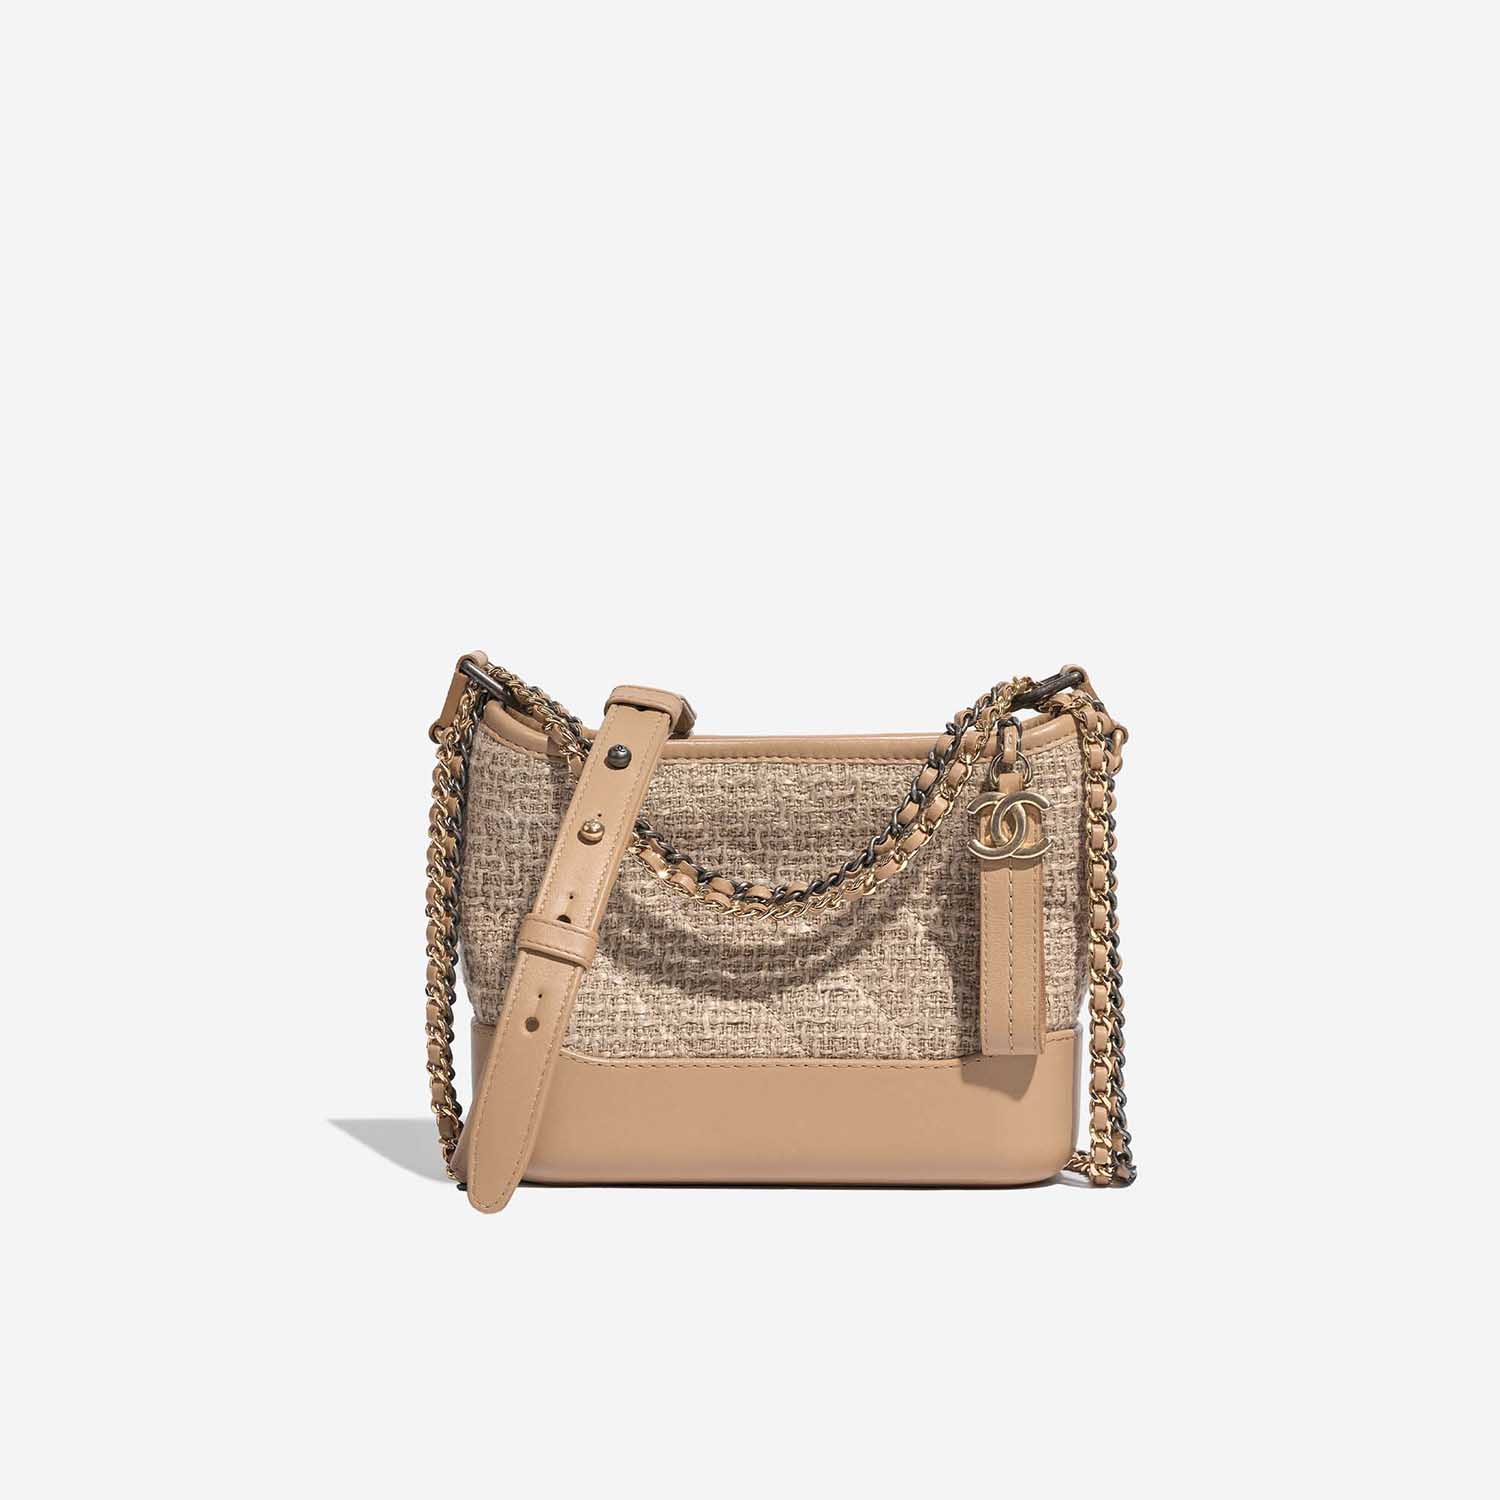 Gebrauchte Chanel Tasche Gabrielle Small Tweed / Kalbsleder Beige Beige Front | Verkaufen Sie Ihre Designer-Tasche auf Saclab.com